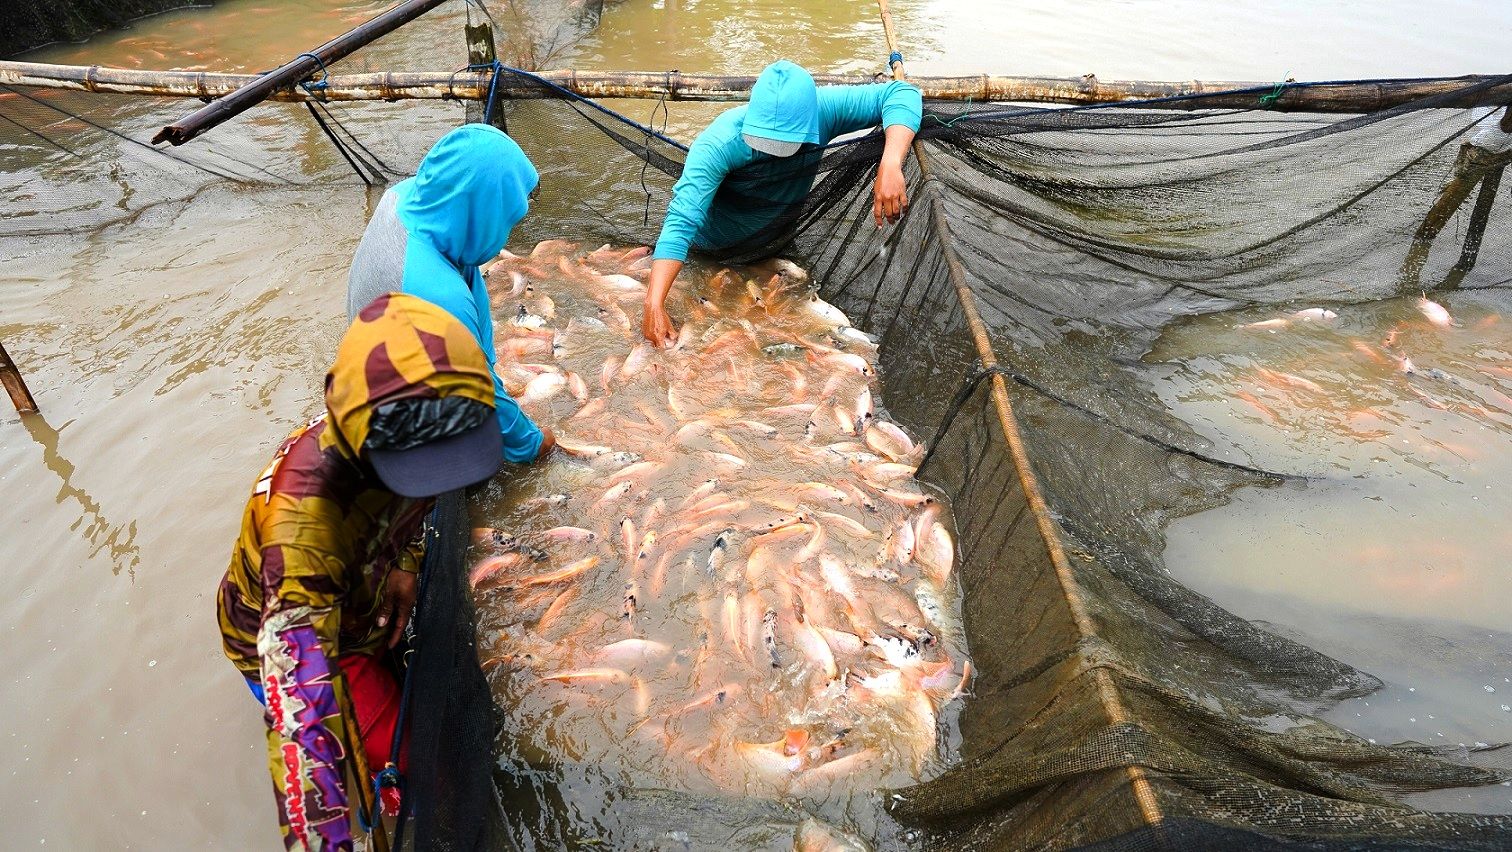 Ikan nila yang dibudidaya secara berkelanjutan menggunakan teknologi eFishery, menghasilkan ikan nila yang terjaga nutrisi dan kesegarannya. Sumber: eFishery